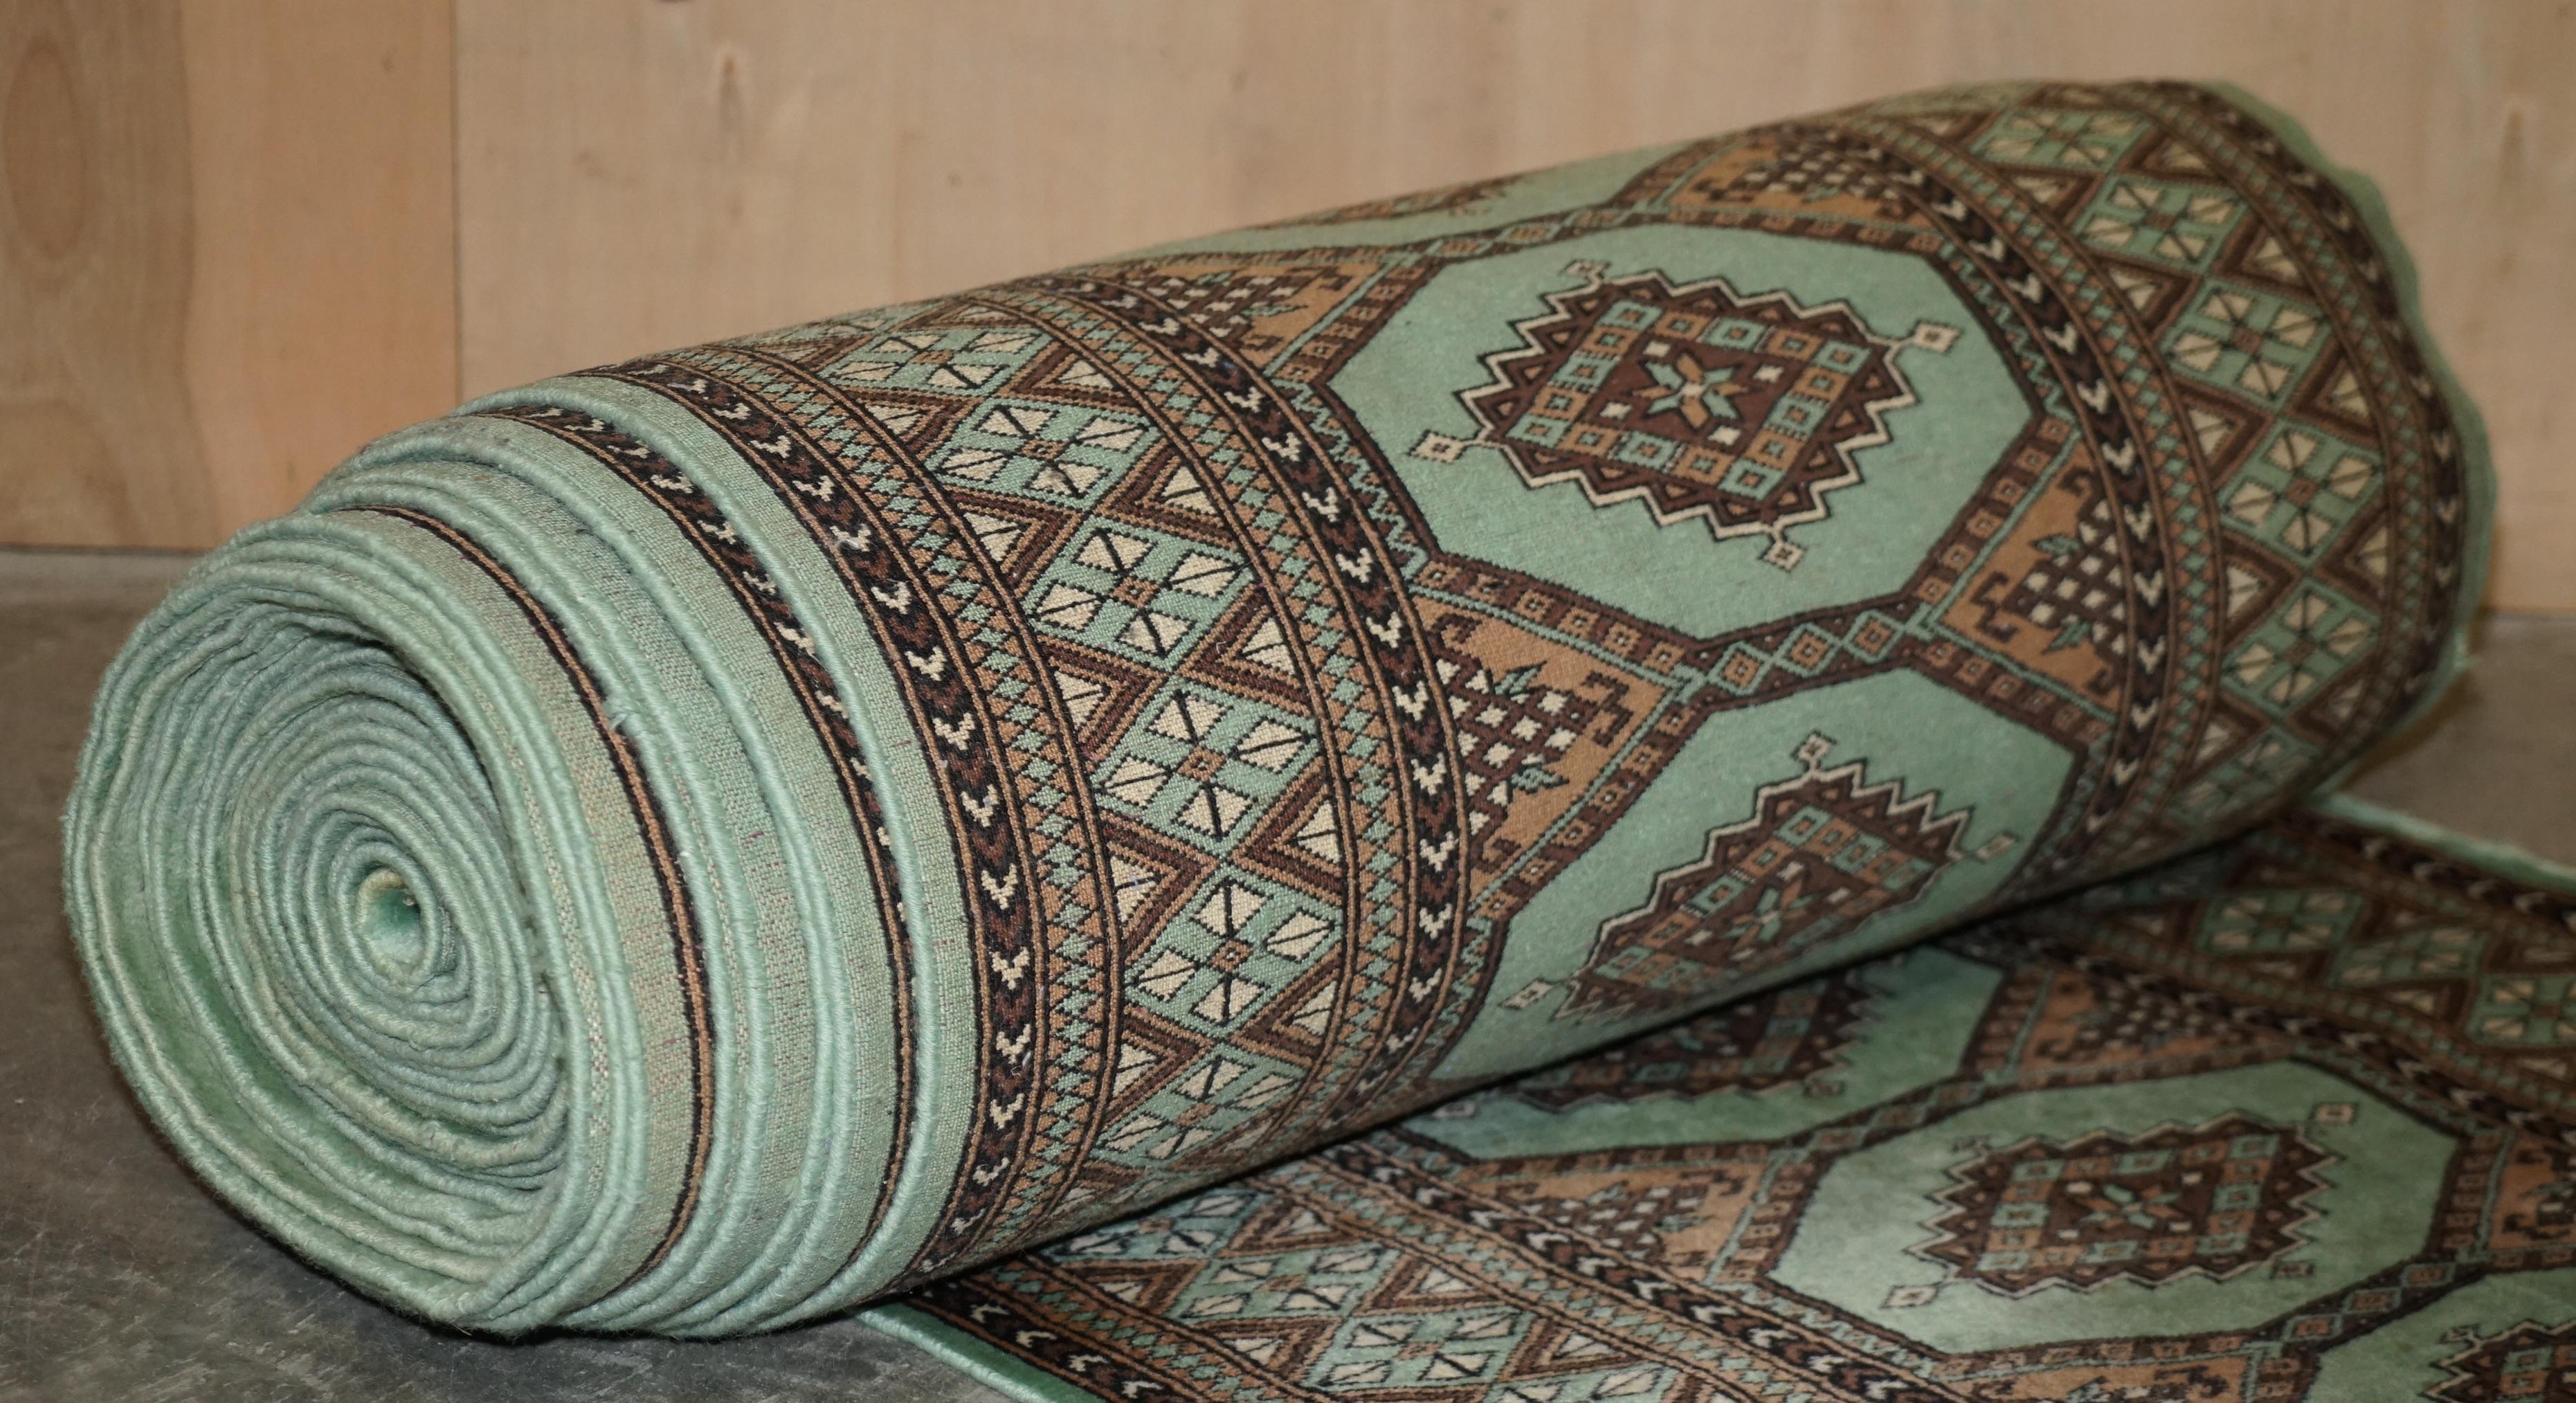 Uzbek Vintage Bokhara Kilim Huge 22 Meter Long Runner Hallway Rug Carpet Must See Pic For Sale